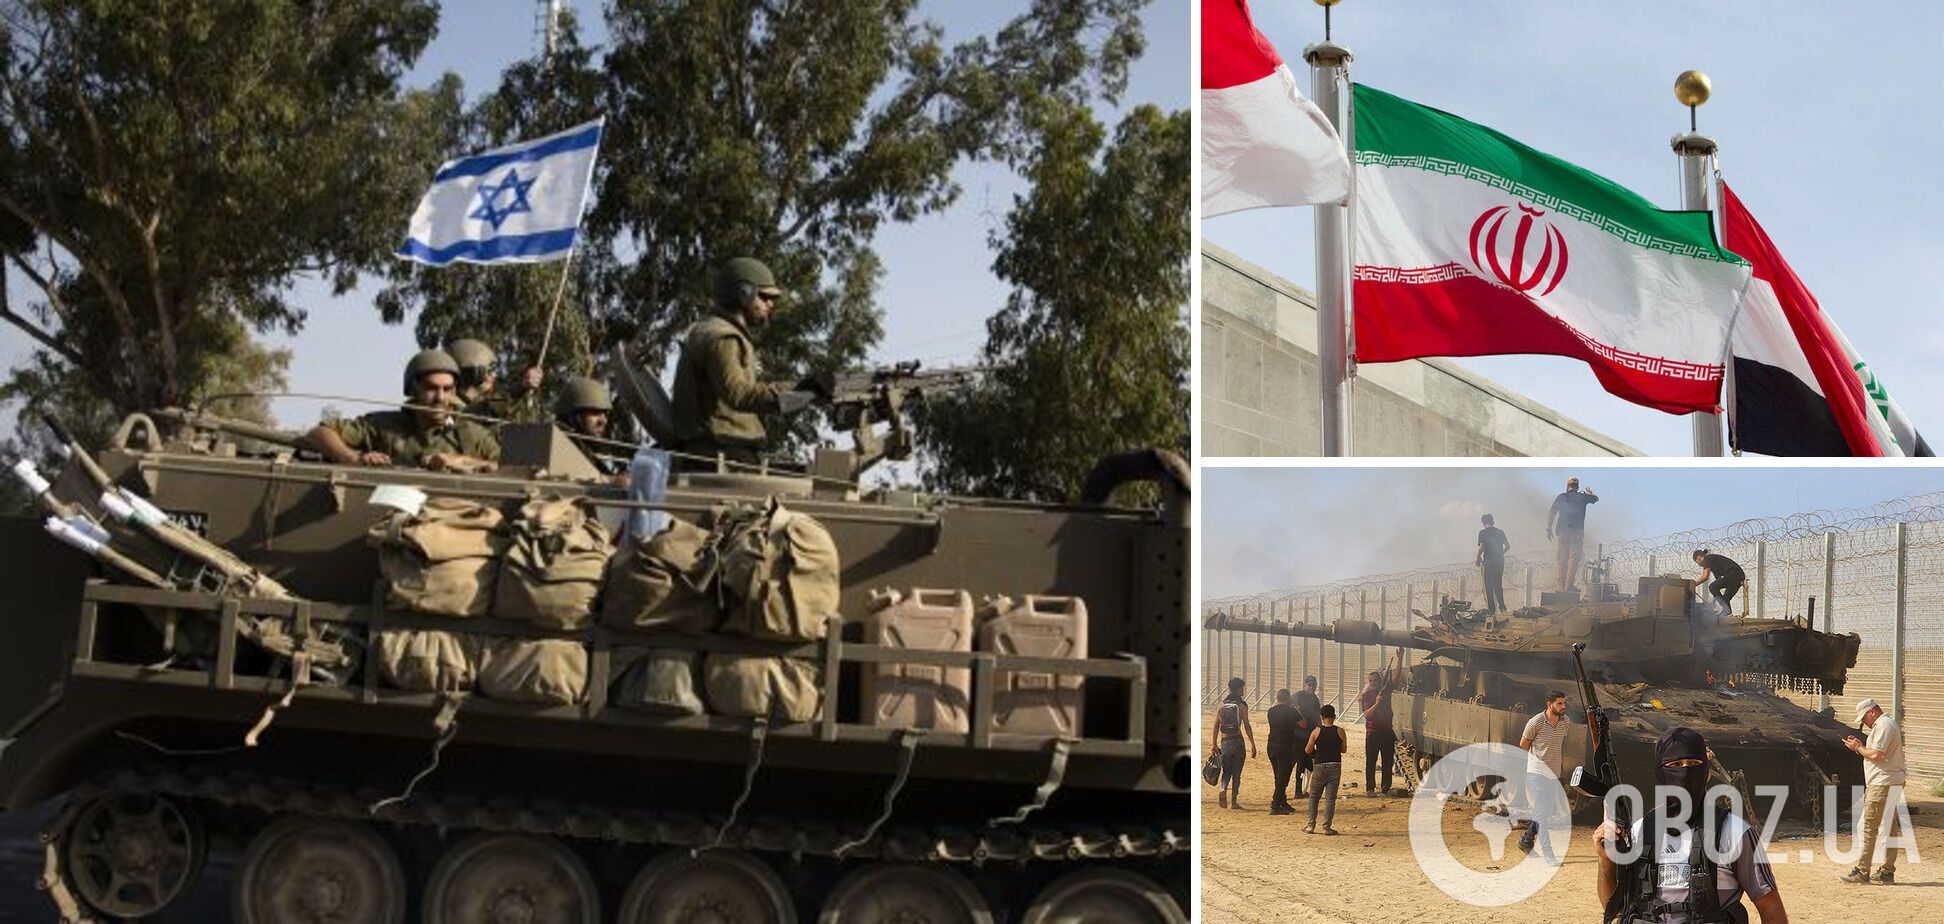 'Ситуація може вийти з-під контролю': Іран через ООН надіслав застереження Ізраїлю щодо військової операції в секторі Гази